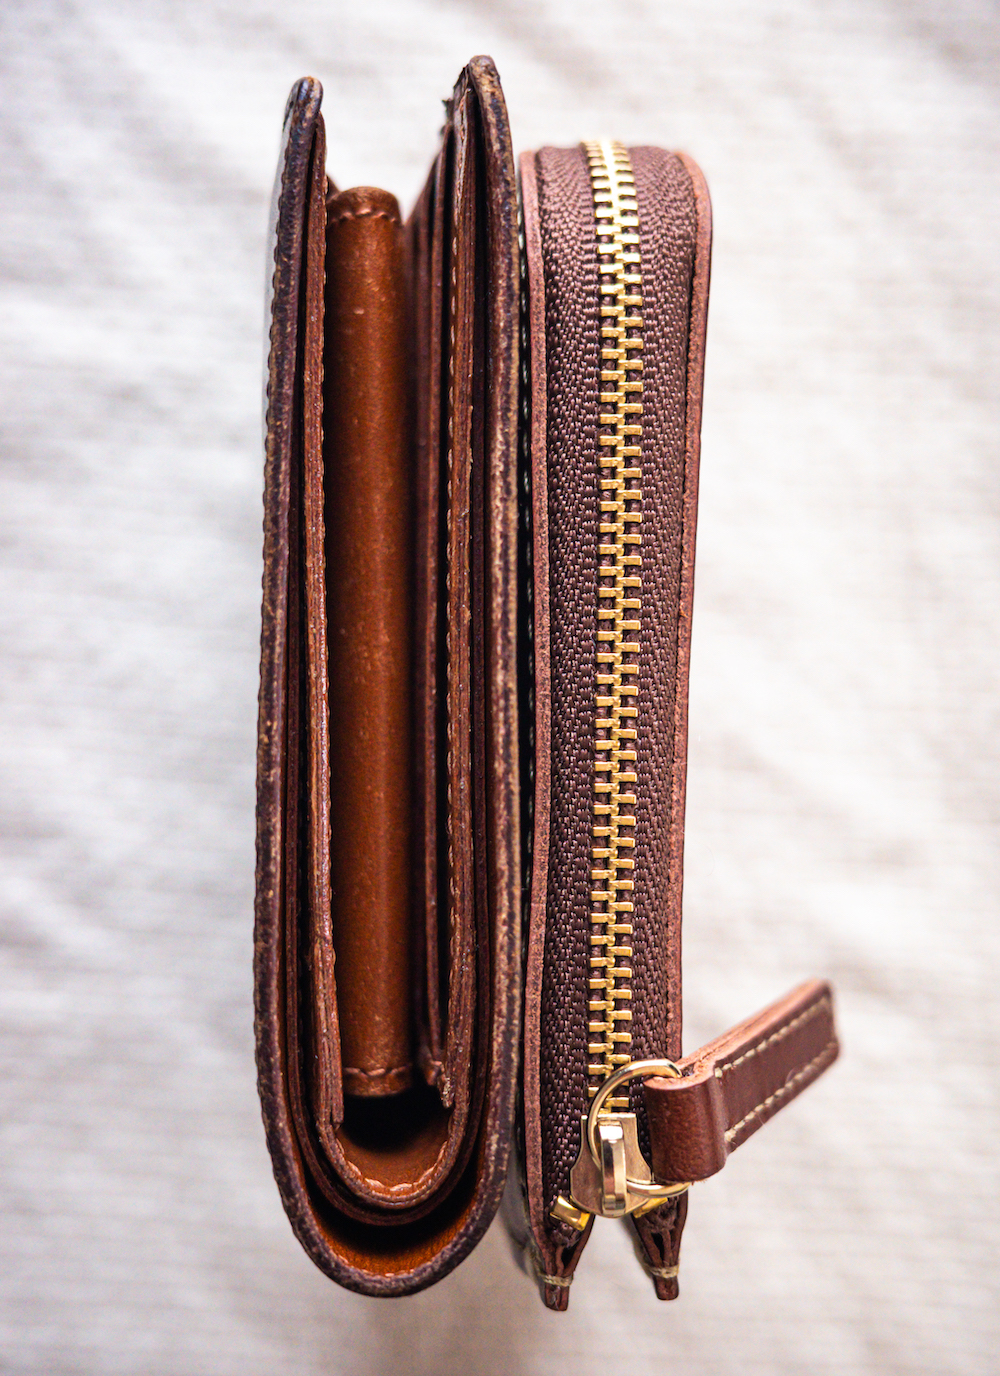 土屋鞄製造所『ディアリオ ハンディLファスナー』と二つ折り財布の薄さの比較